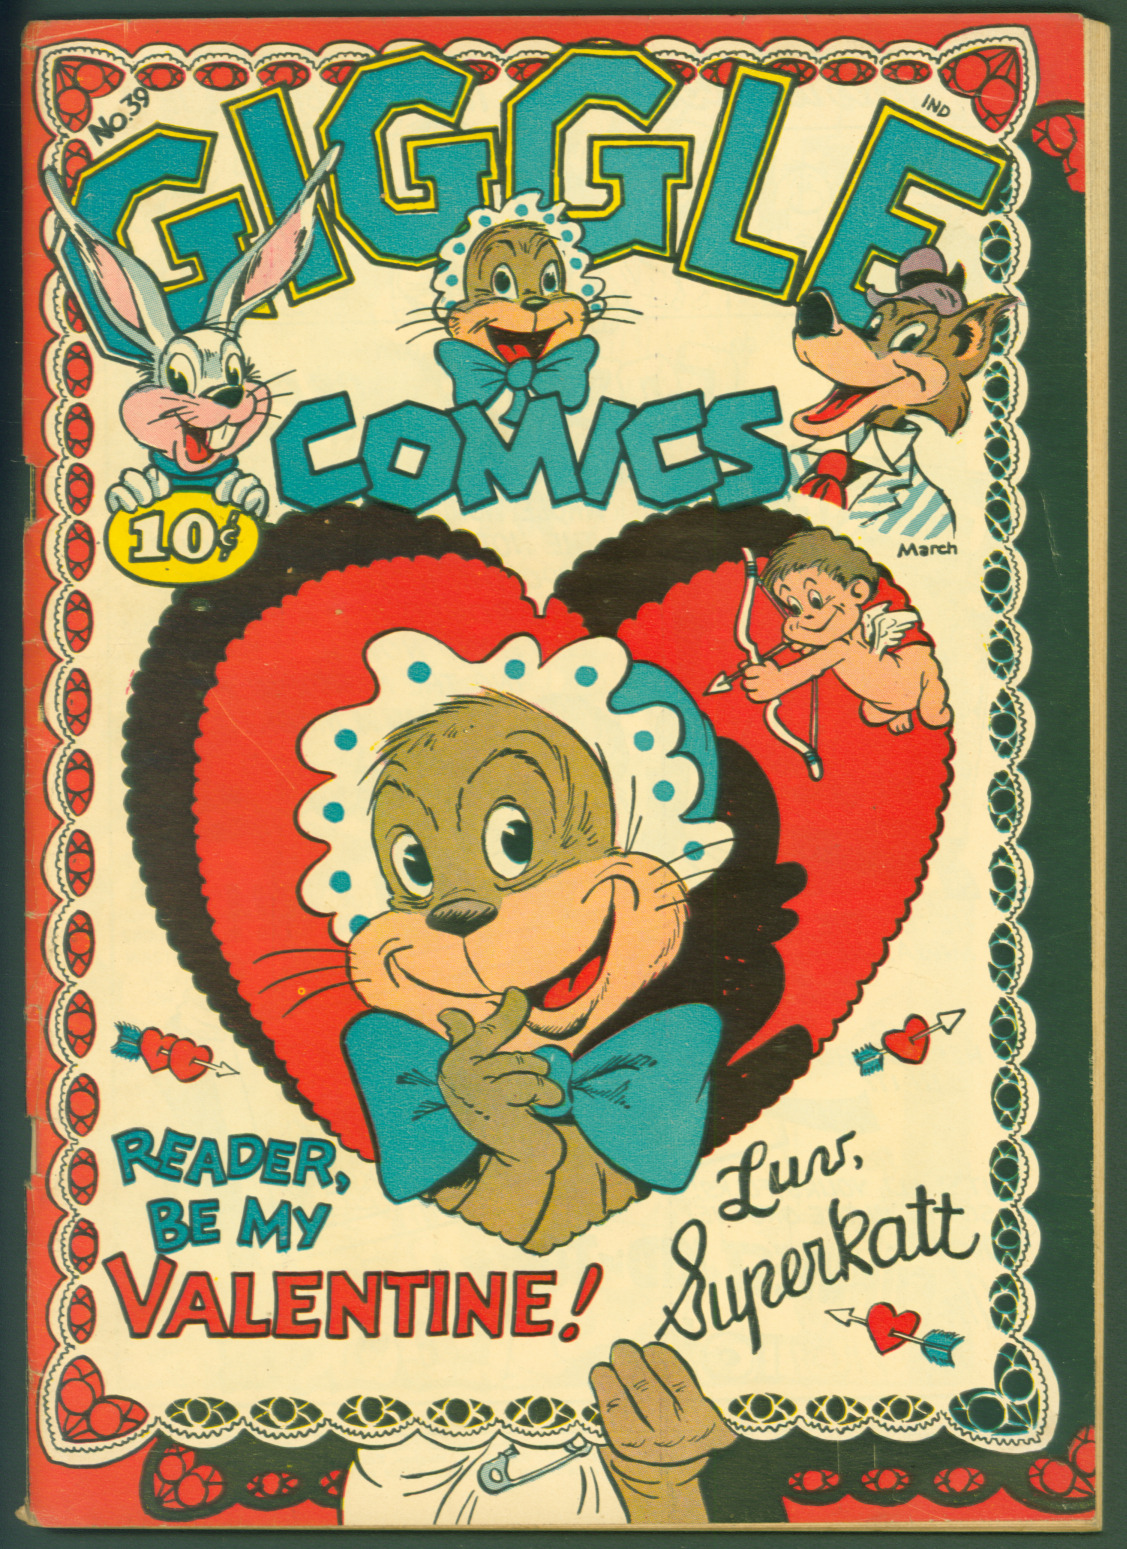 VTG 1947 Golden Age Creston Giggle Comics #39 VG/F Valentine Cover  Superkatt